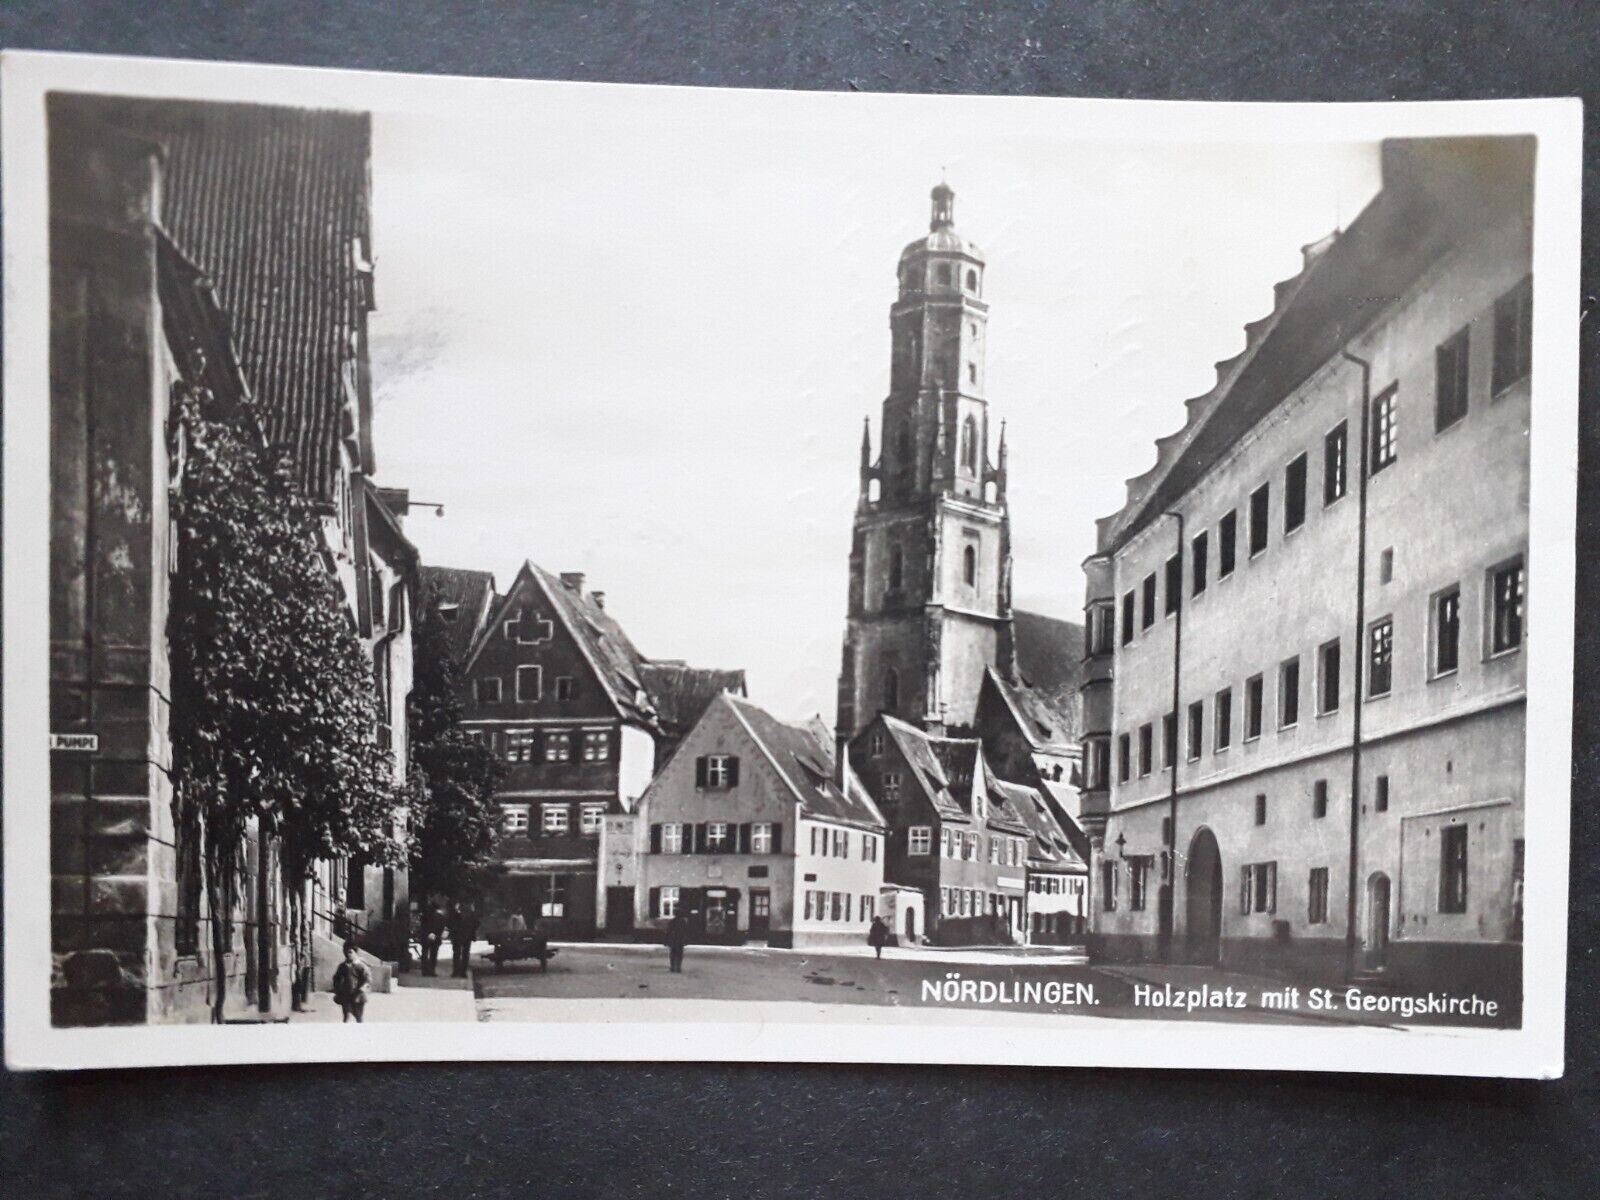 Nördlingen Holzplatz with St. Georgskirche 1929